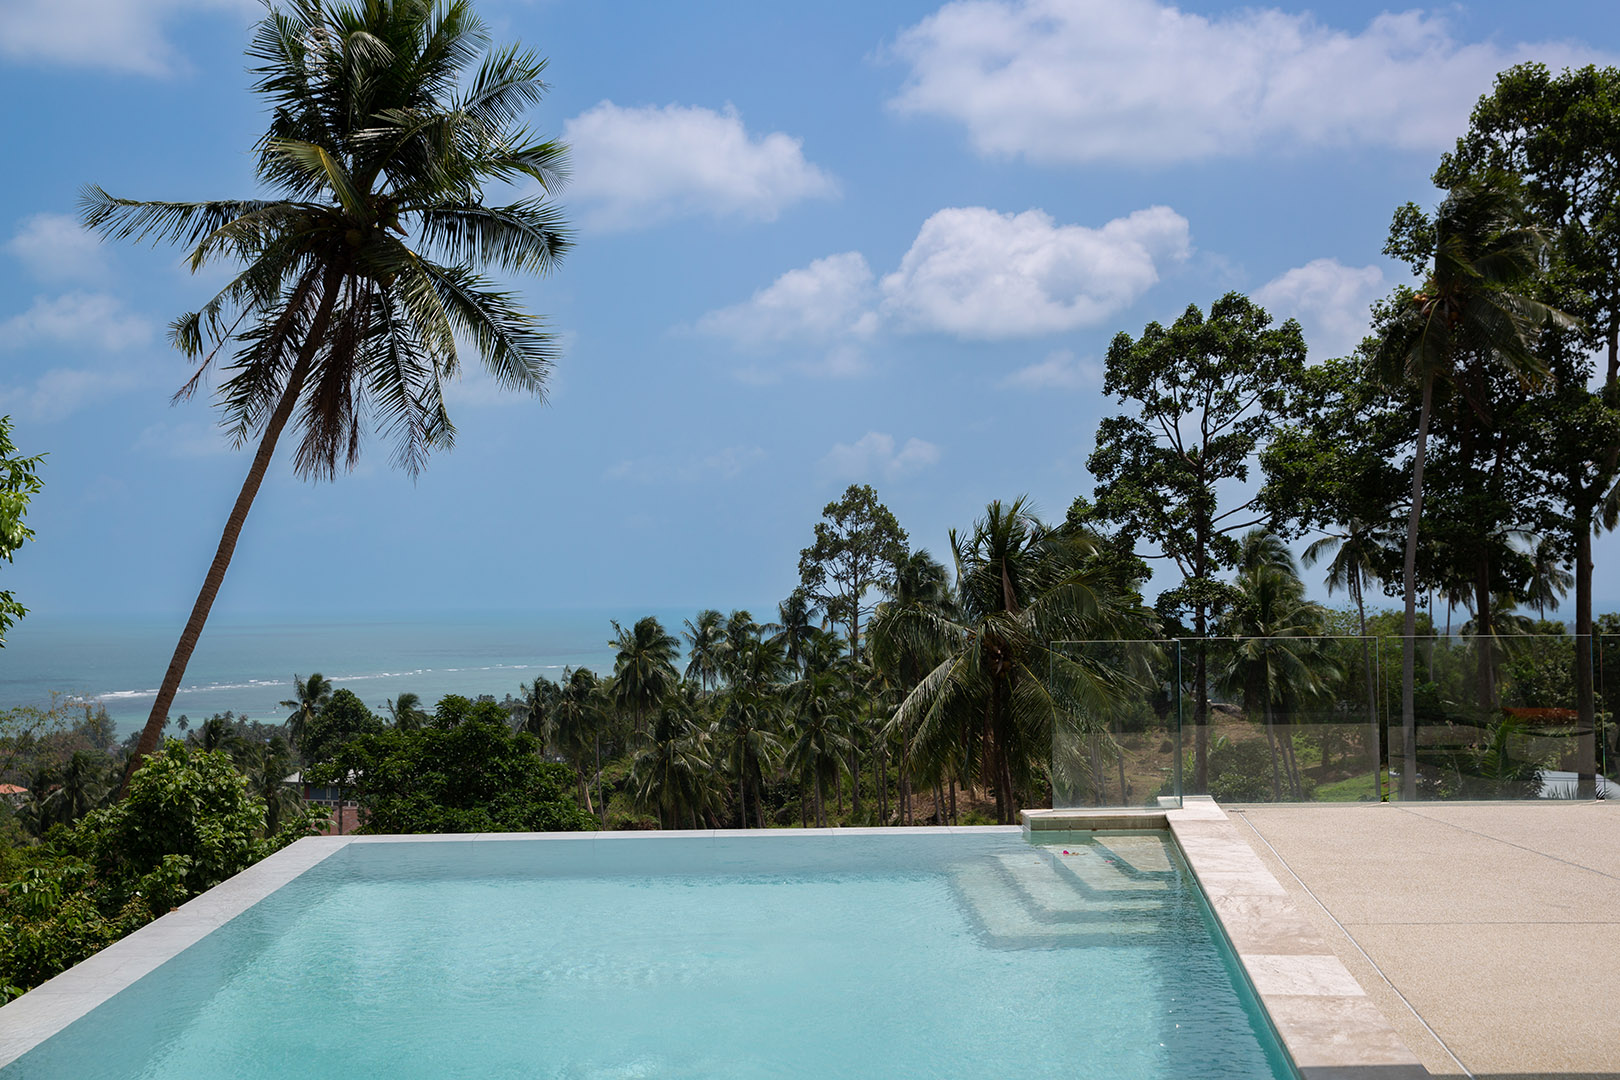 Oasis Samui – Modern 4 Bedroom Seaview Pool Villa in Lamai for sale: Oasis Samui – Modern 4 Bedroom Seaview Pool Villa in Lamai for sale